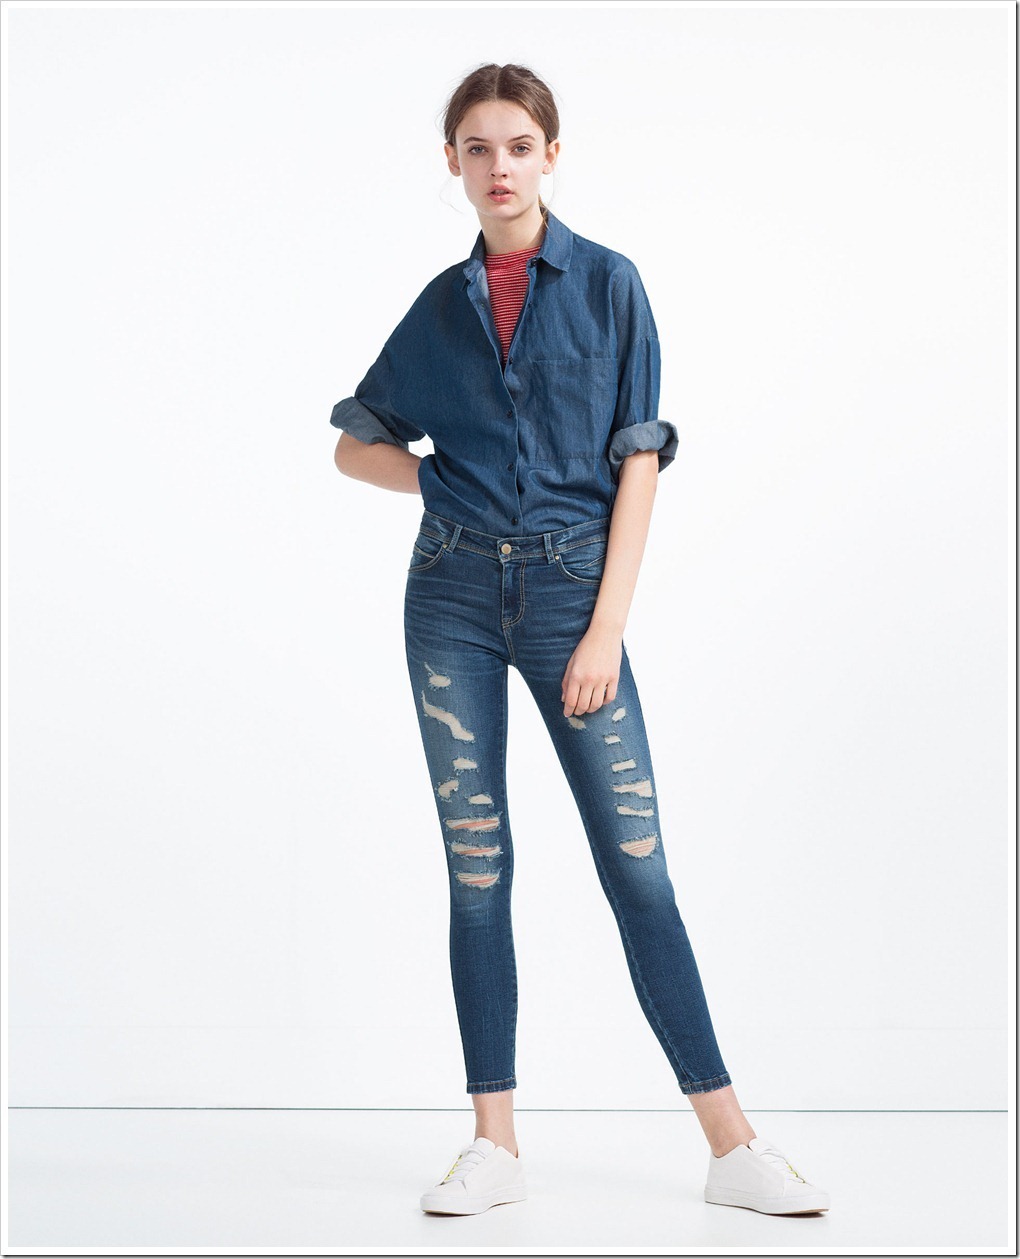 ZARA jeans for women : Denimsandjeans.com